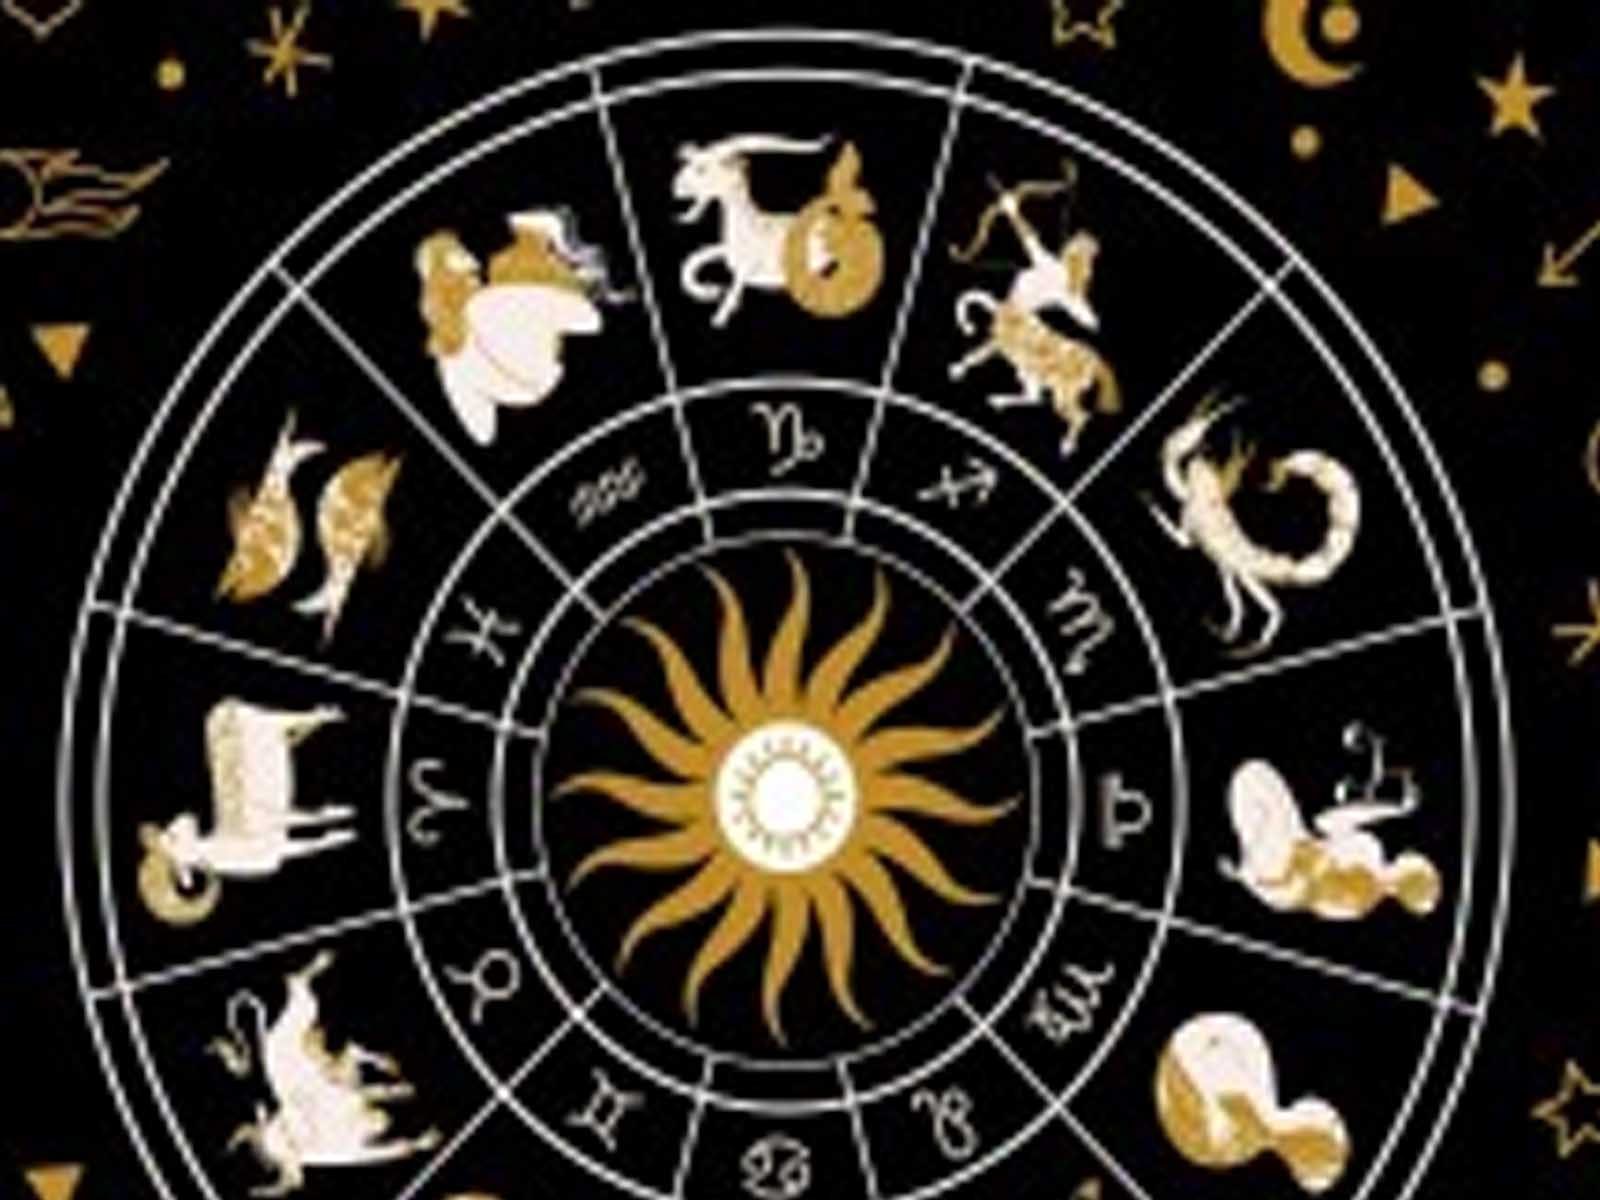 Money Mantra Astrology:ਕੰਨਿਆ ਰਾਸ਼ੀ ਦੇ ਲੋਕ ਪੈਸੇ ਉਧਾਰ ਦੇਣ ਤੋਂ ਬਚਣ, ਪੜ੍ਹੋ ਕੀ ਕਹਿੰਦਾ ਹੈ ਮਨੀ ਮੰਤਰਾ